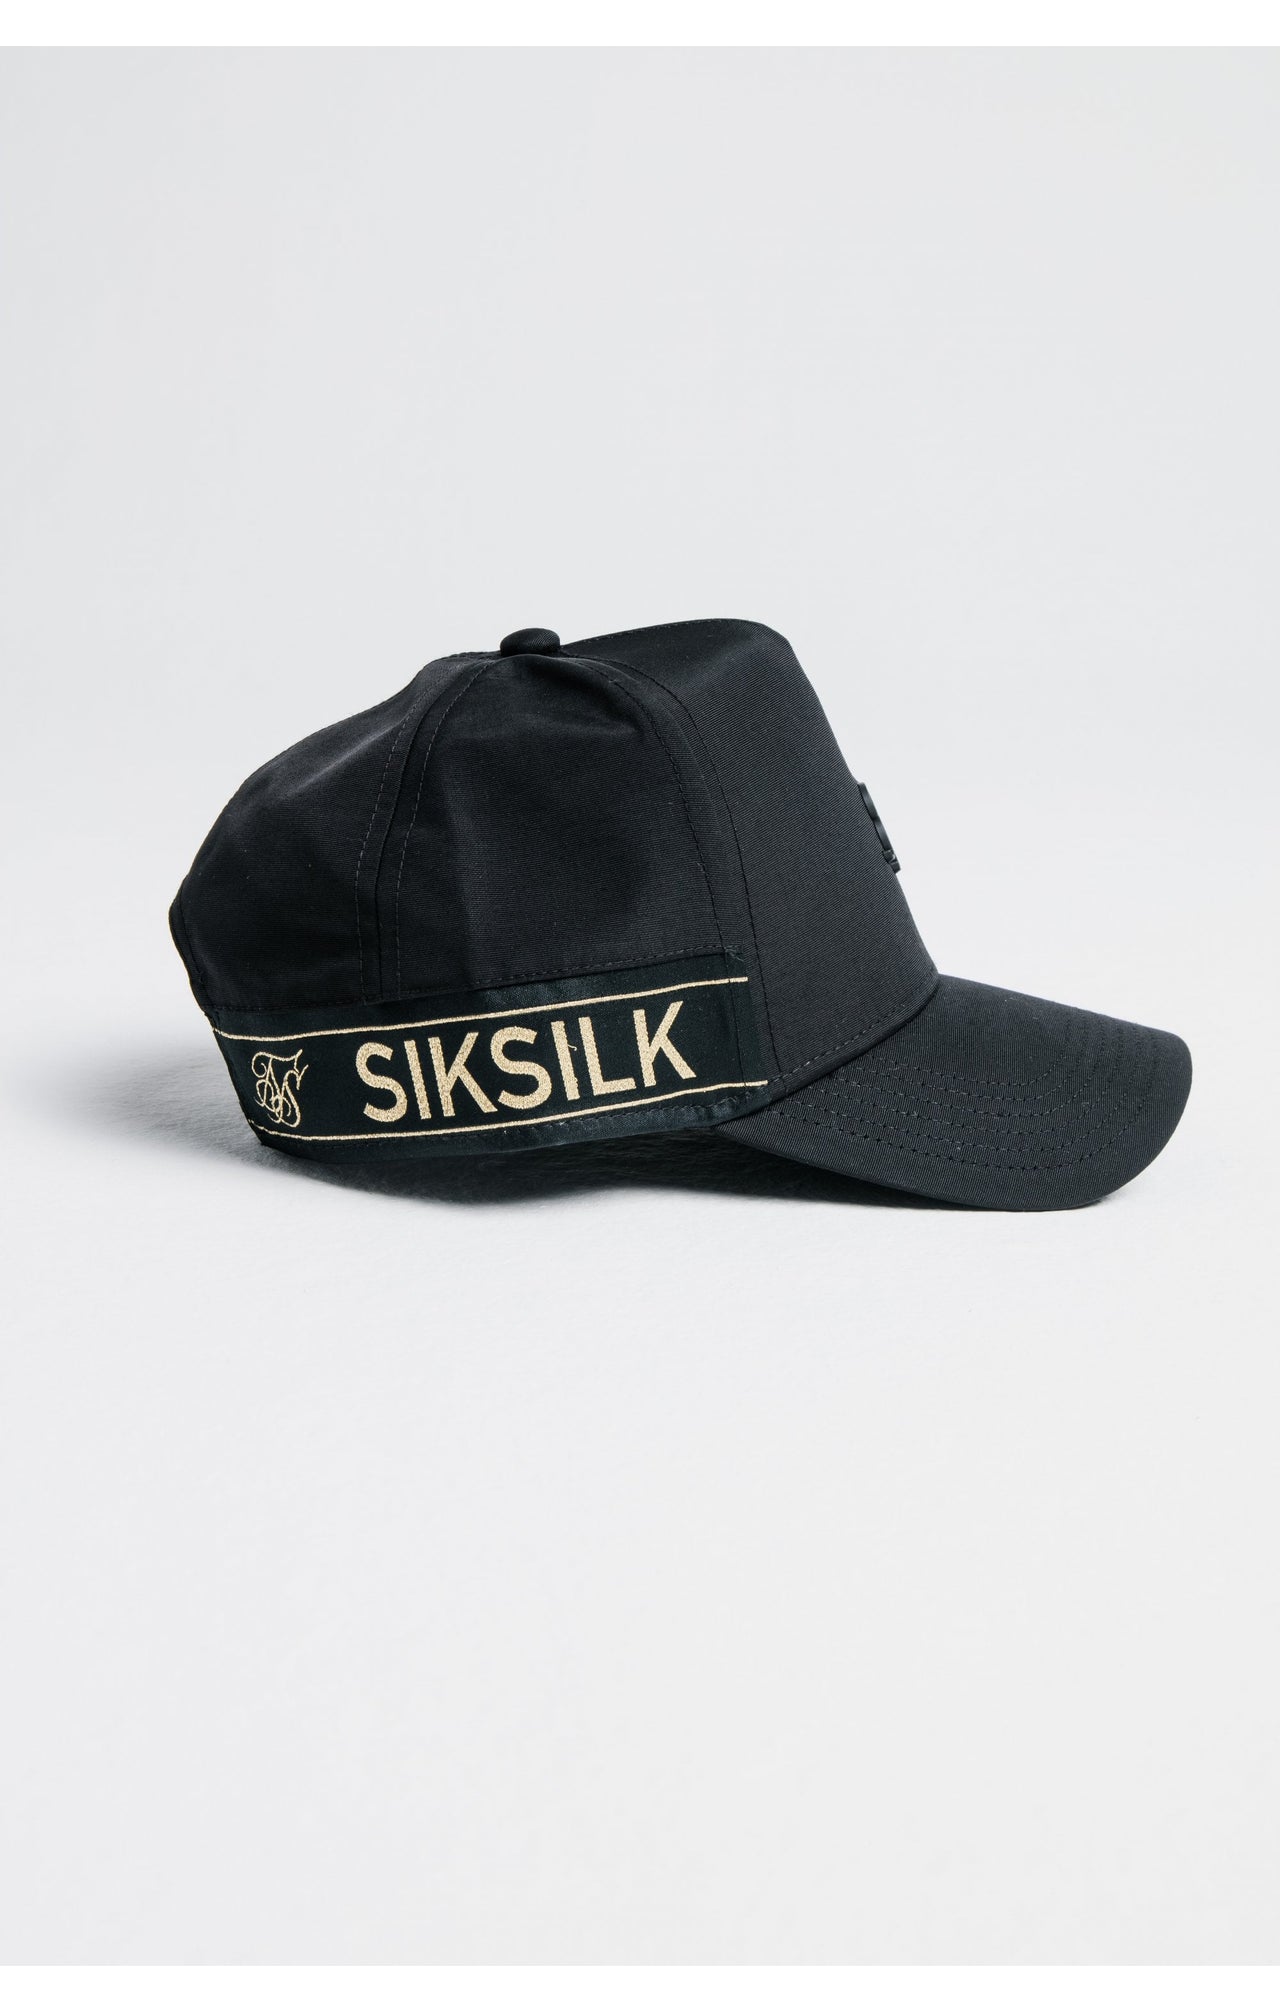 SikSilk Nylon Tape trucker - Black & Gold (3)